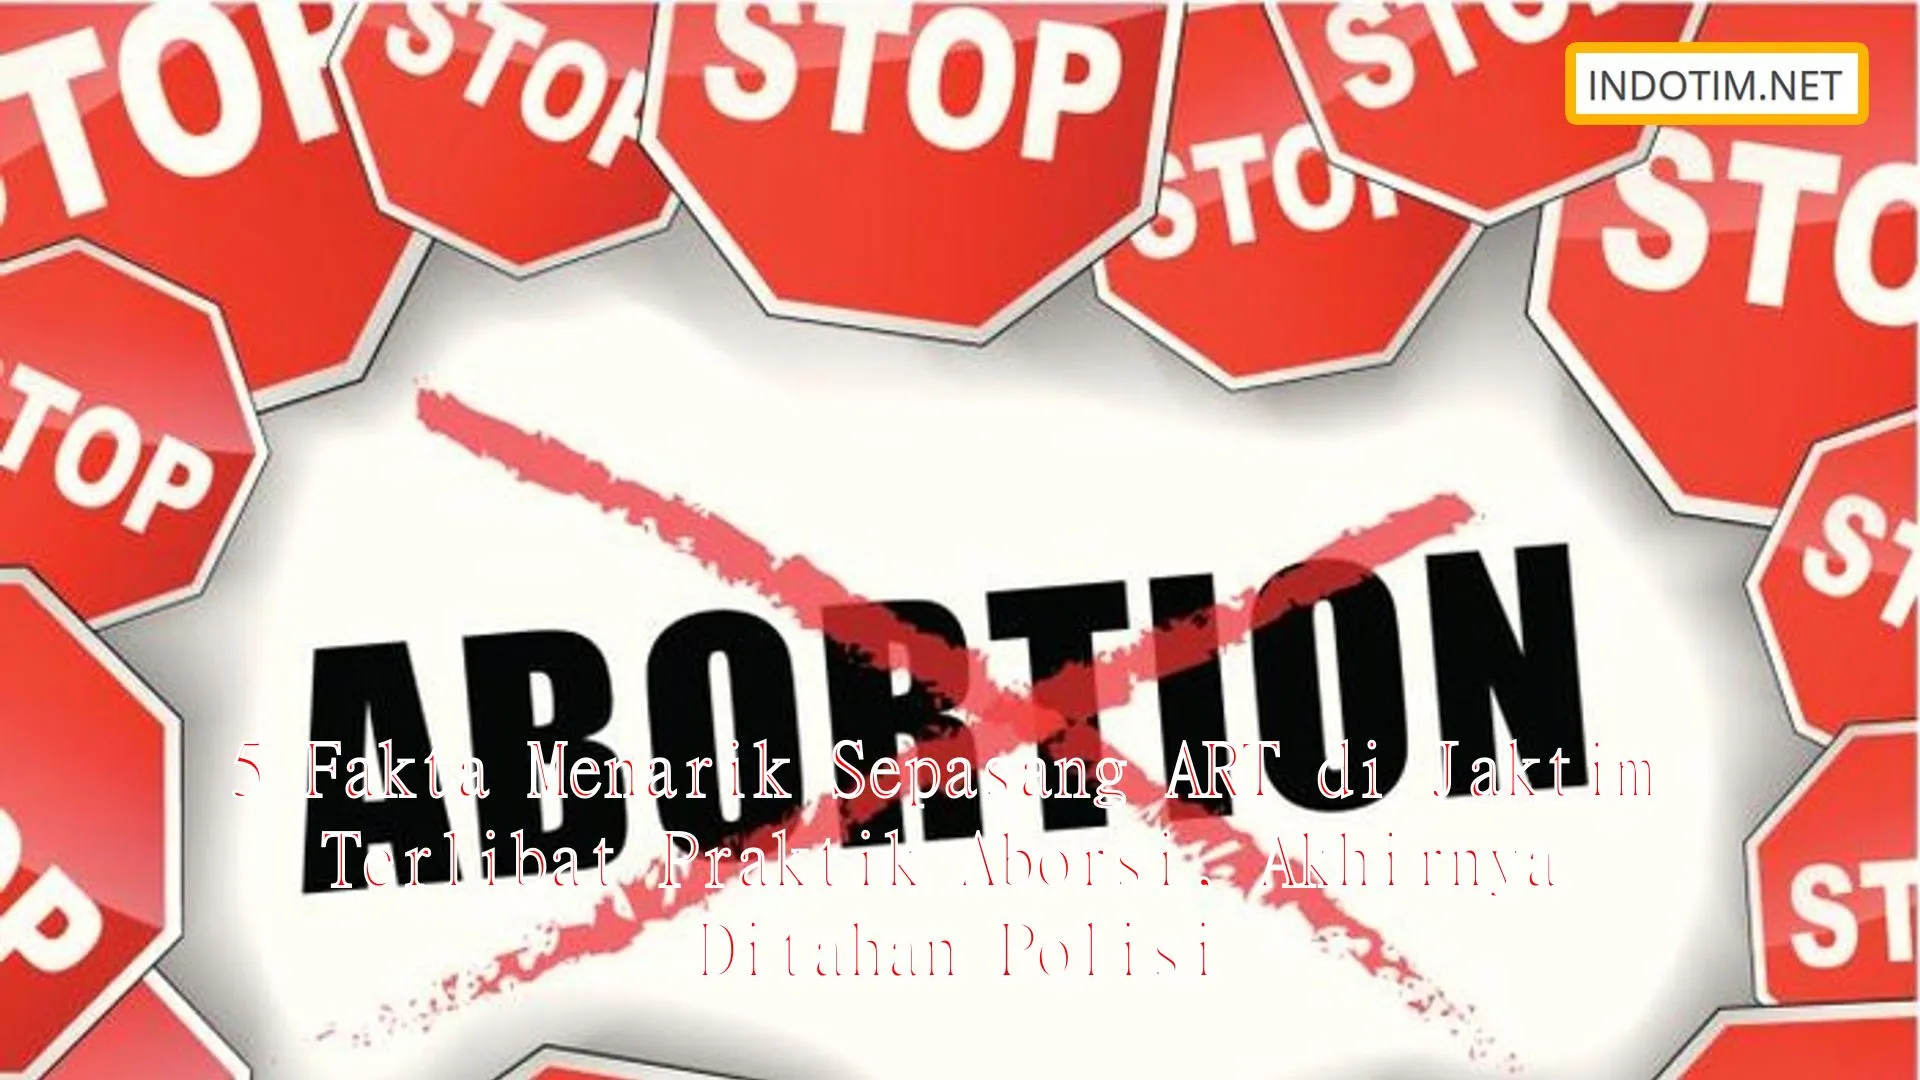 5 Fakta Menarik Sepasang ART di Jaktim Terlibat Praktik Aborsi, Akhirnya Ditahan Polisi